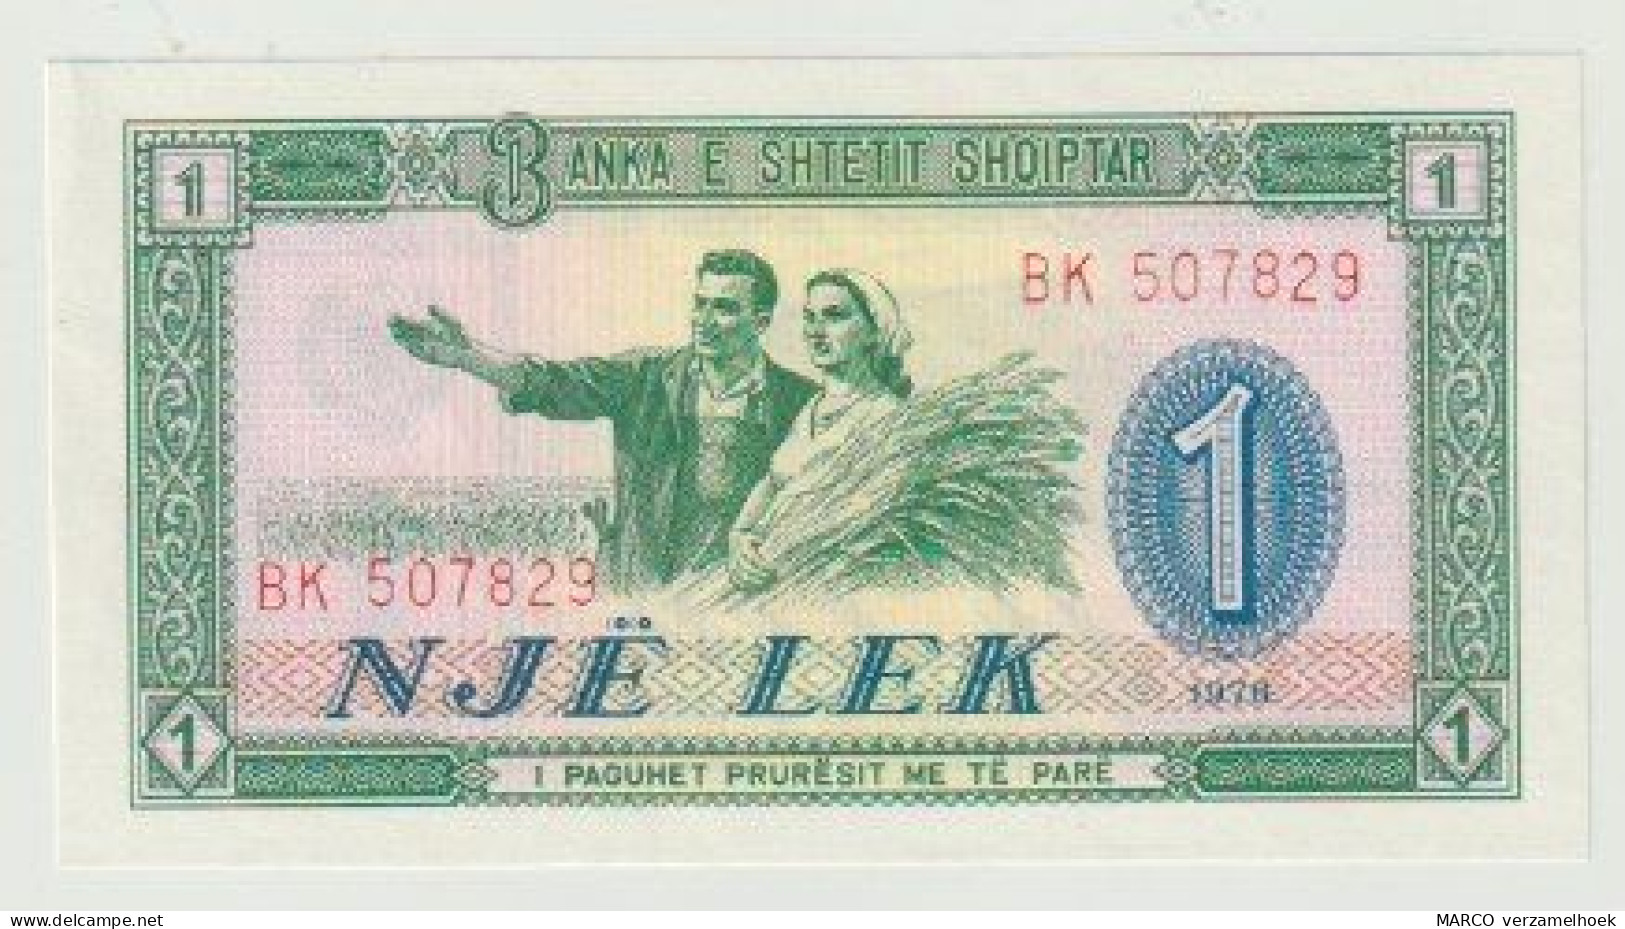 Banknote Banka E Shetetit Shqiptar Albania-albanië 1 Lek 1976 UNC (BK) - Albanie